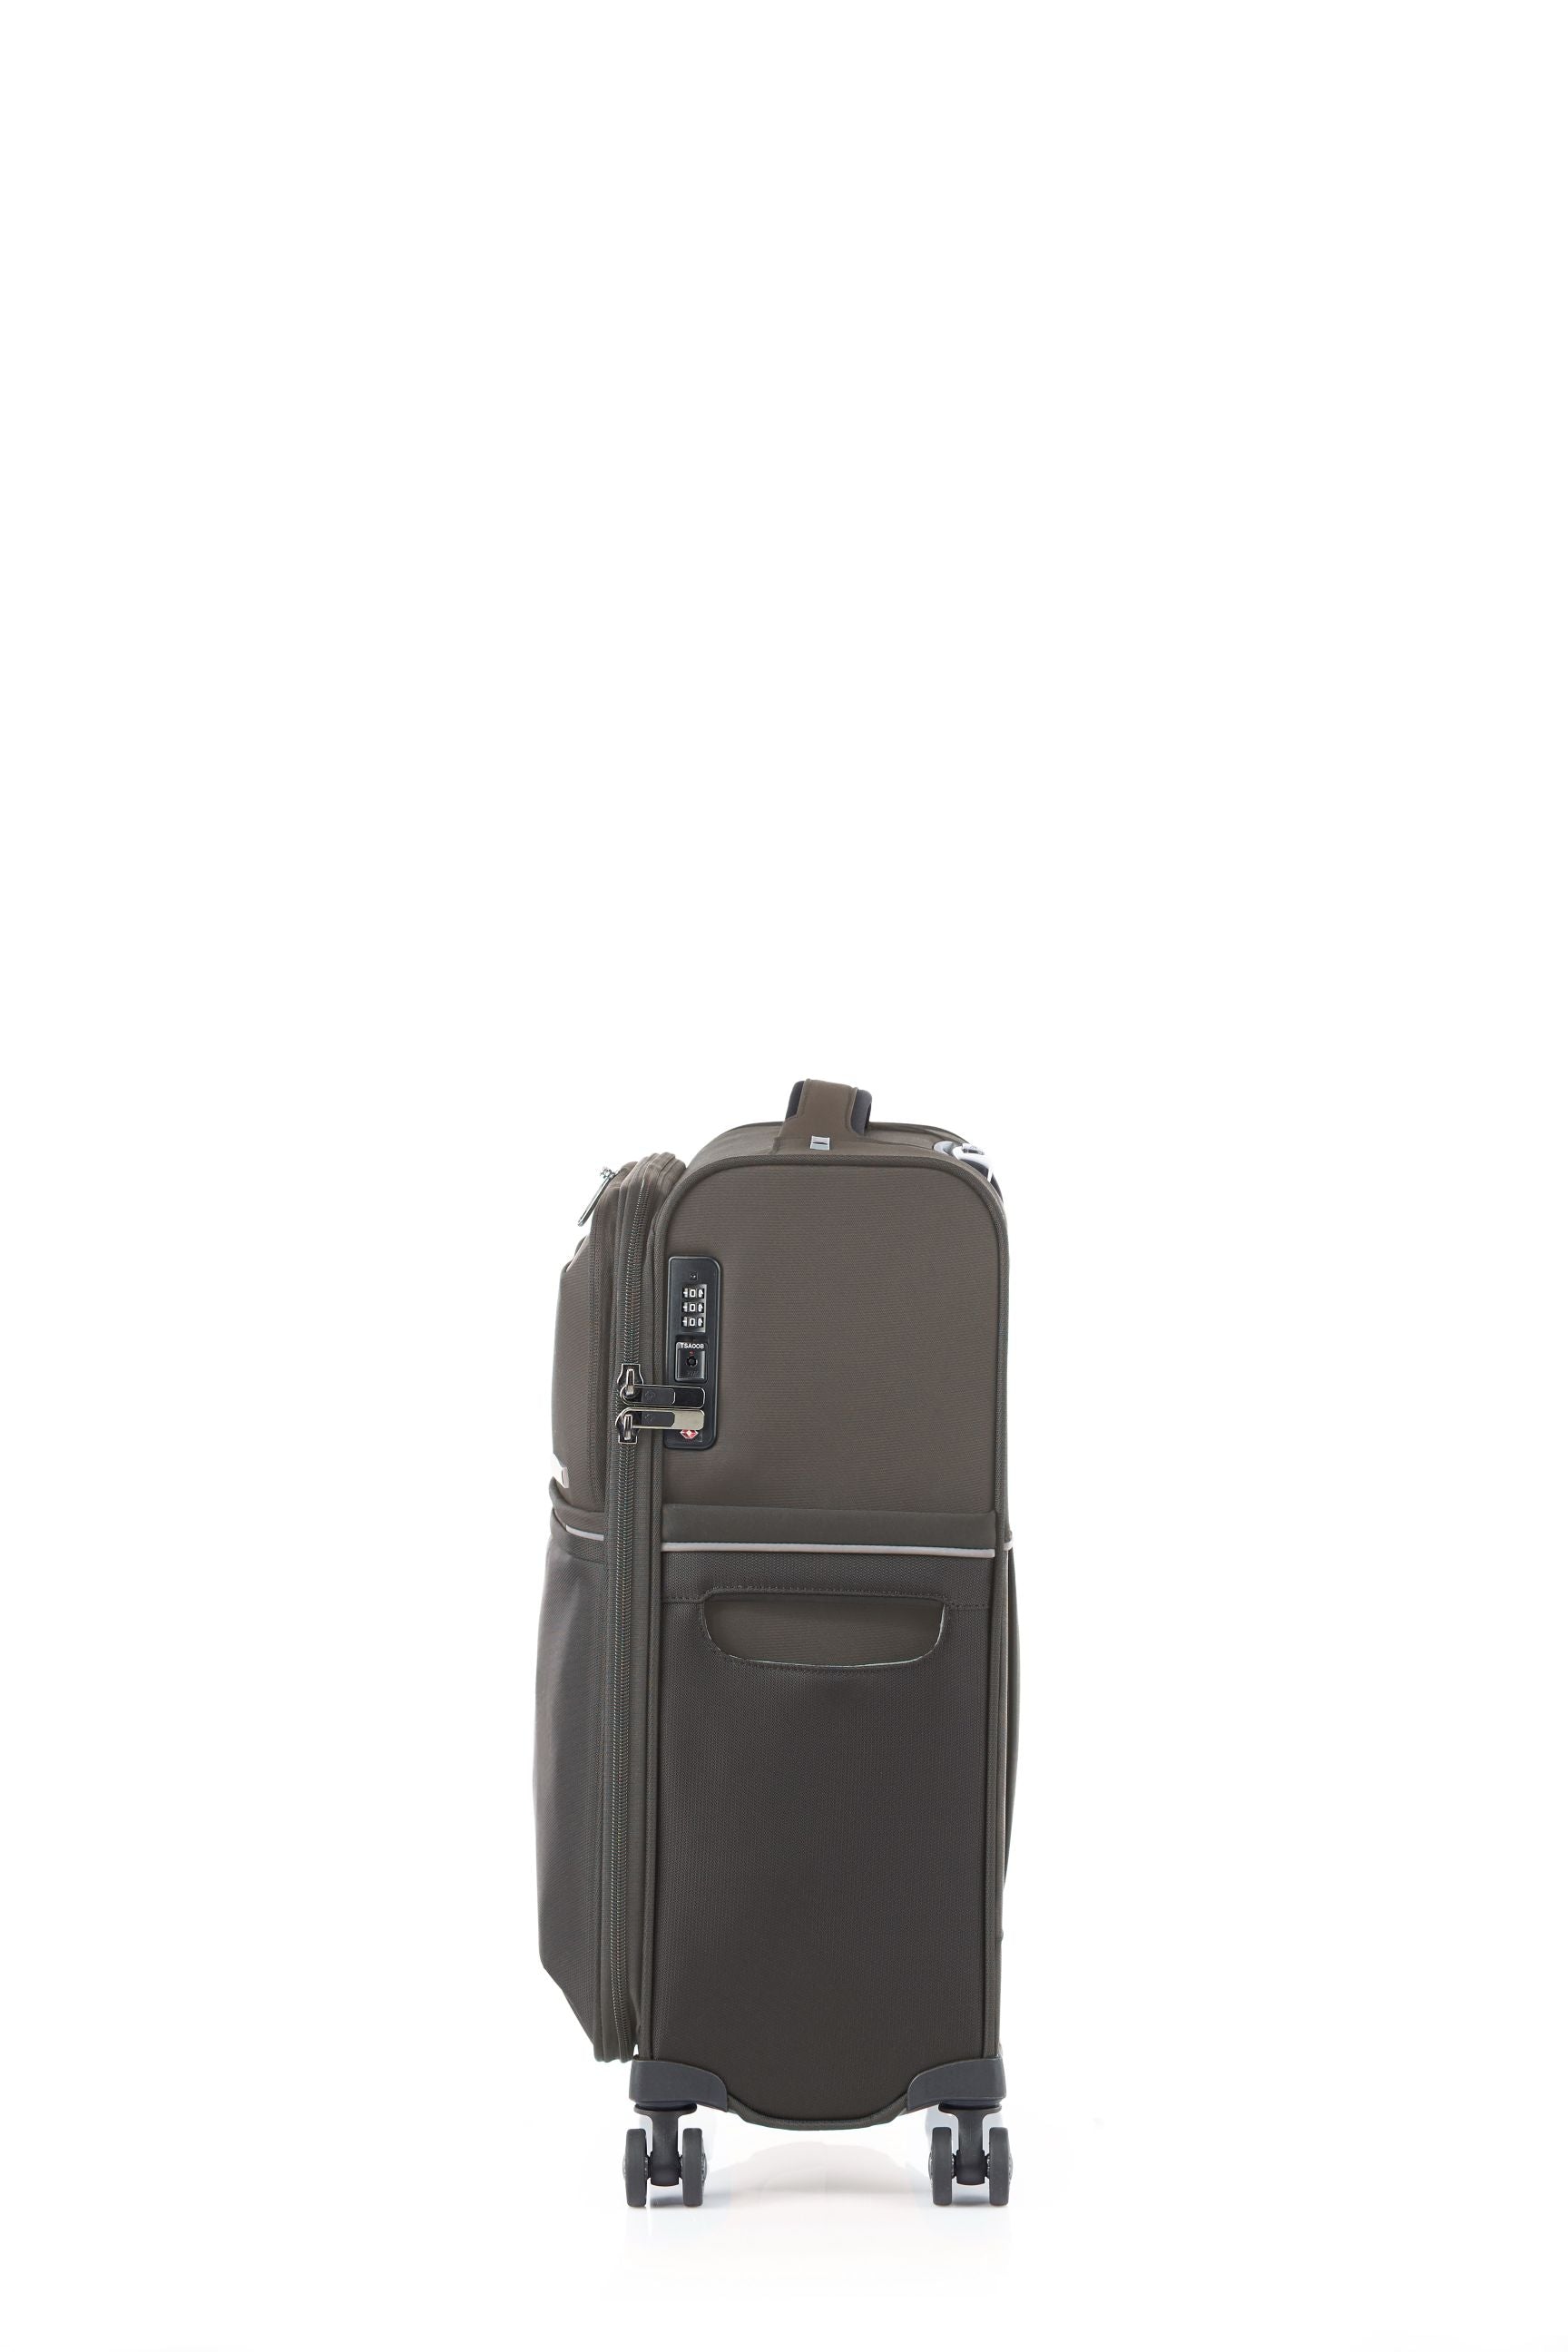 Samsonite - 73HR 55cm Small Suitcase - Platinum Grey-3